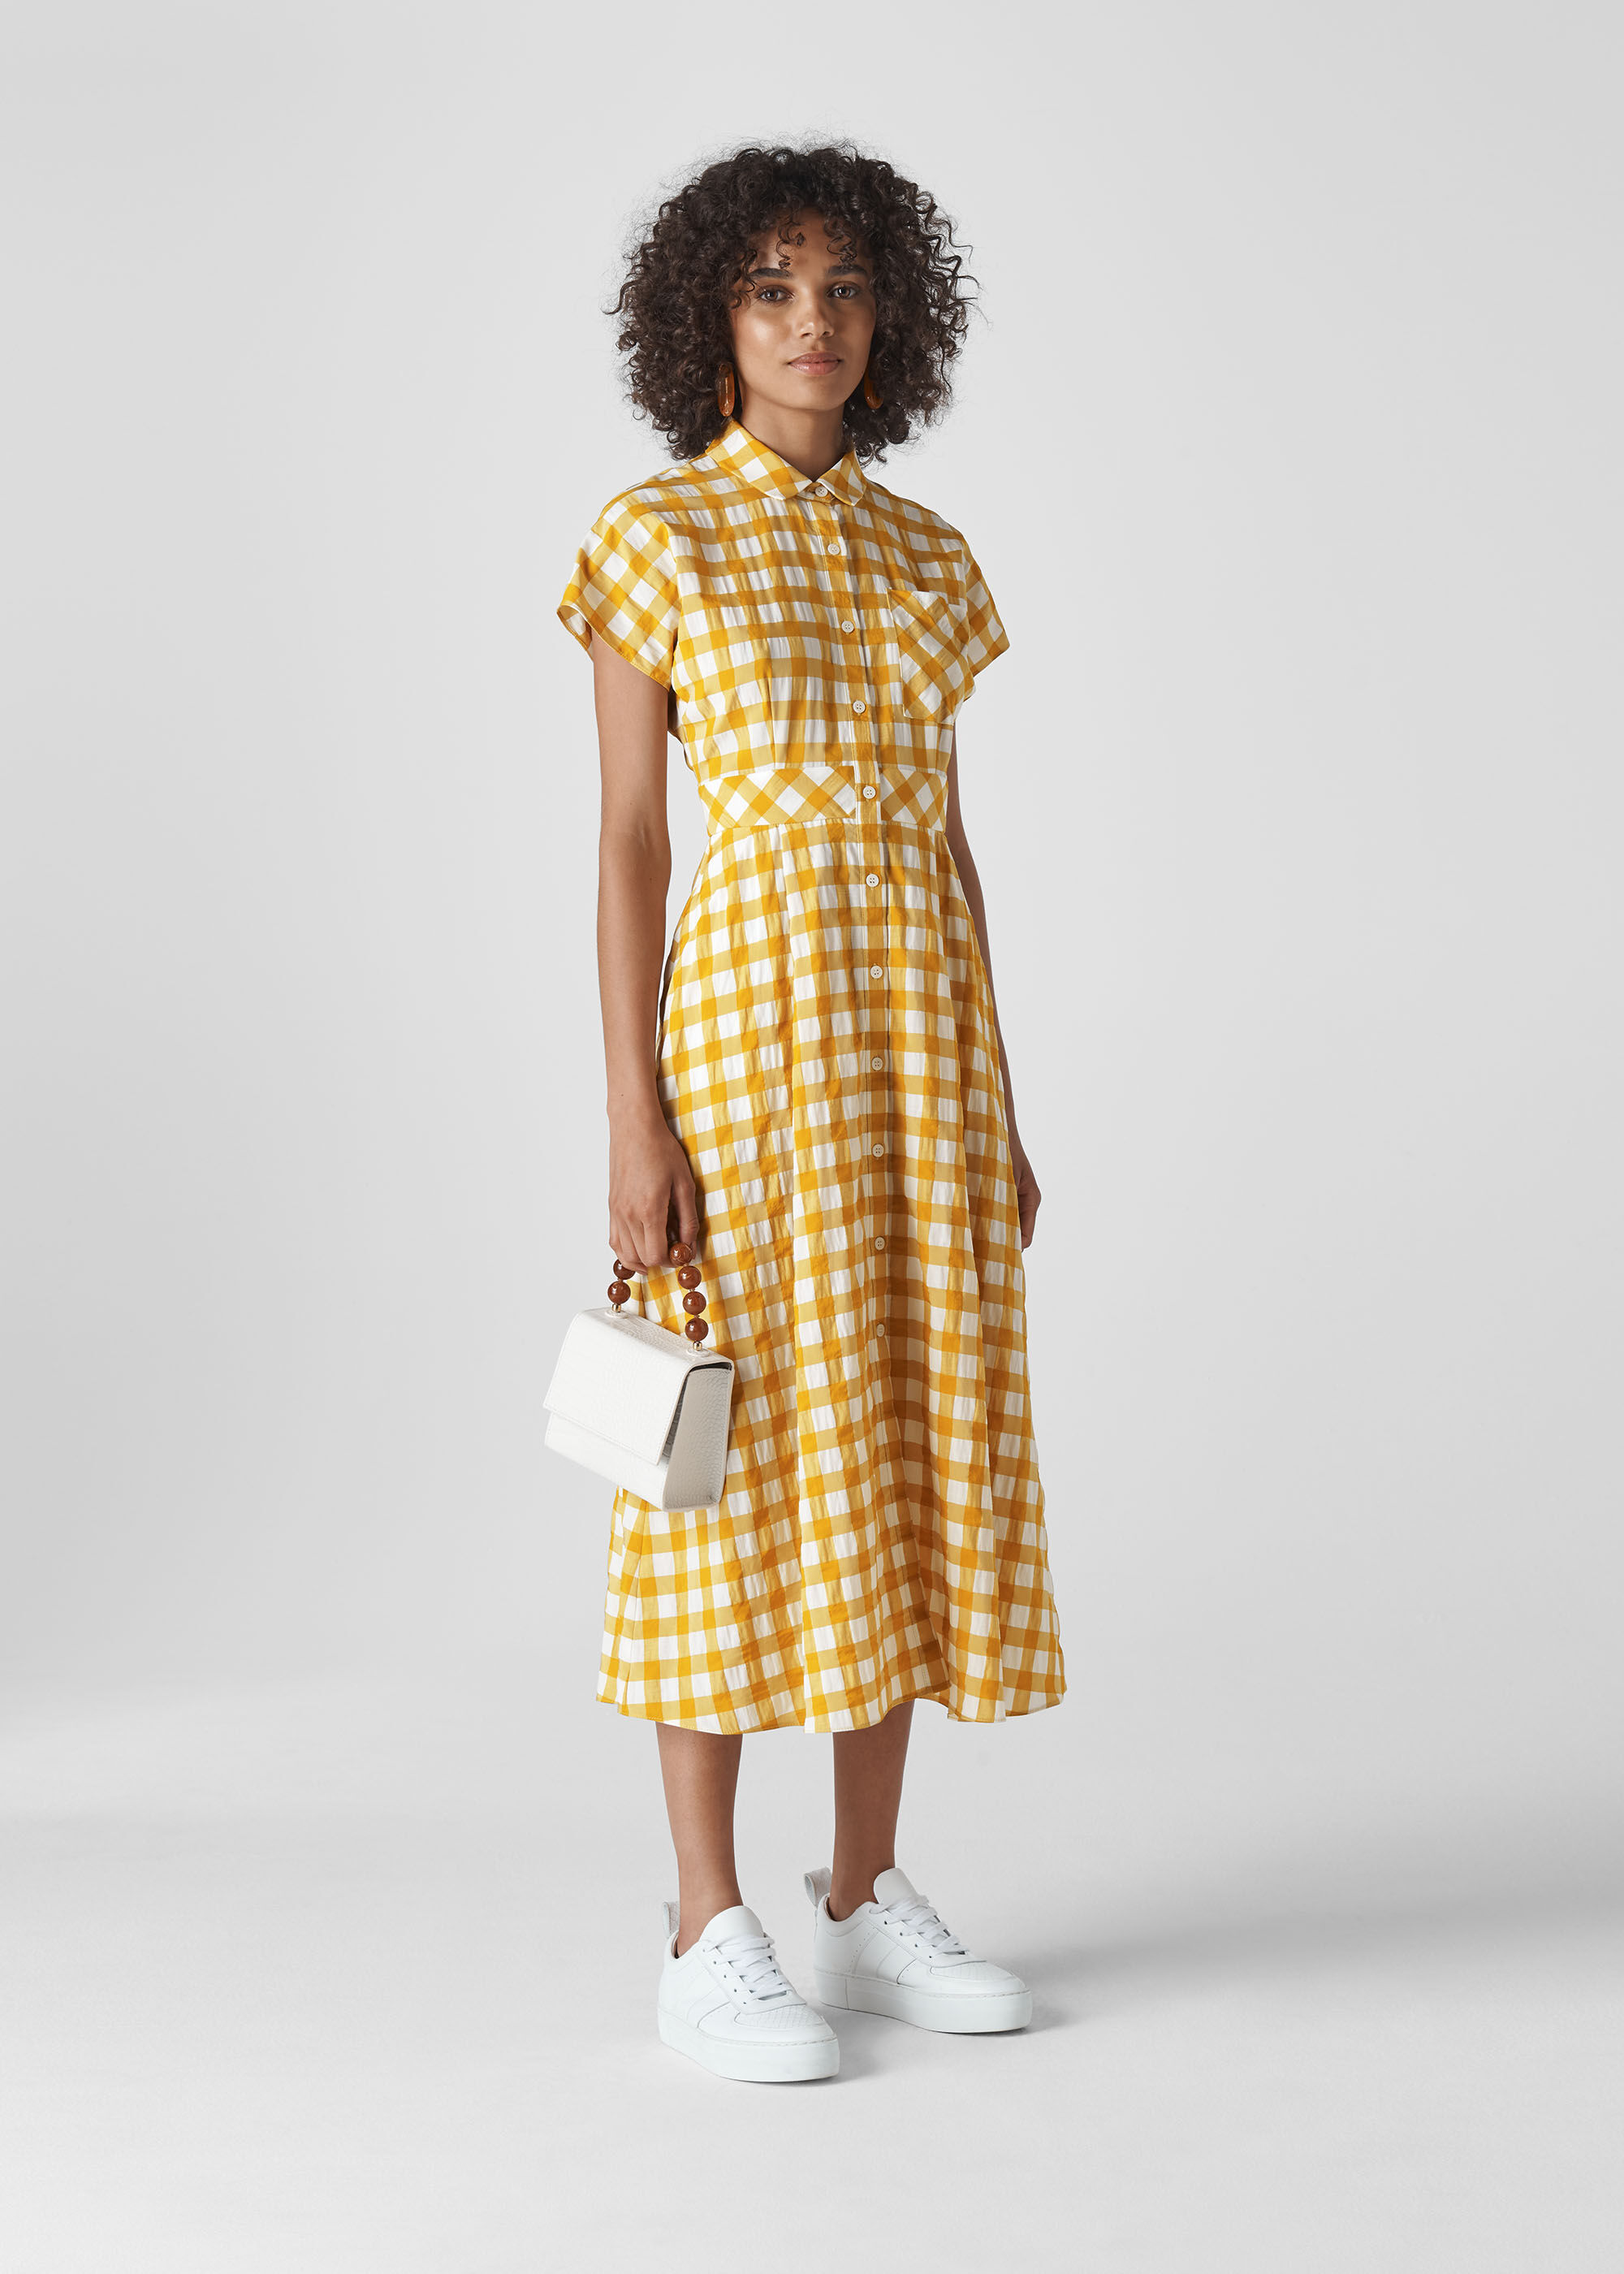 yellow and white checkered dress